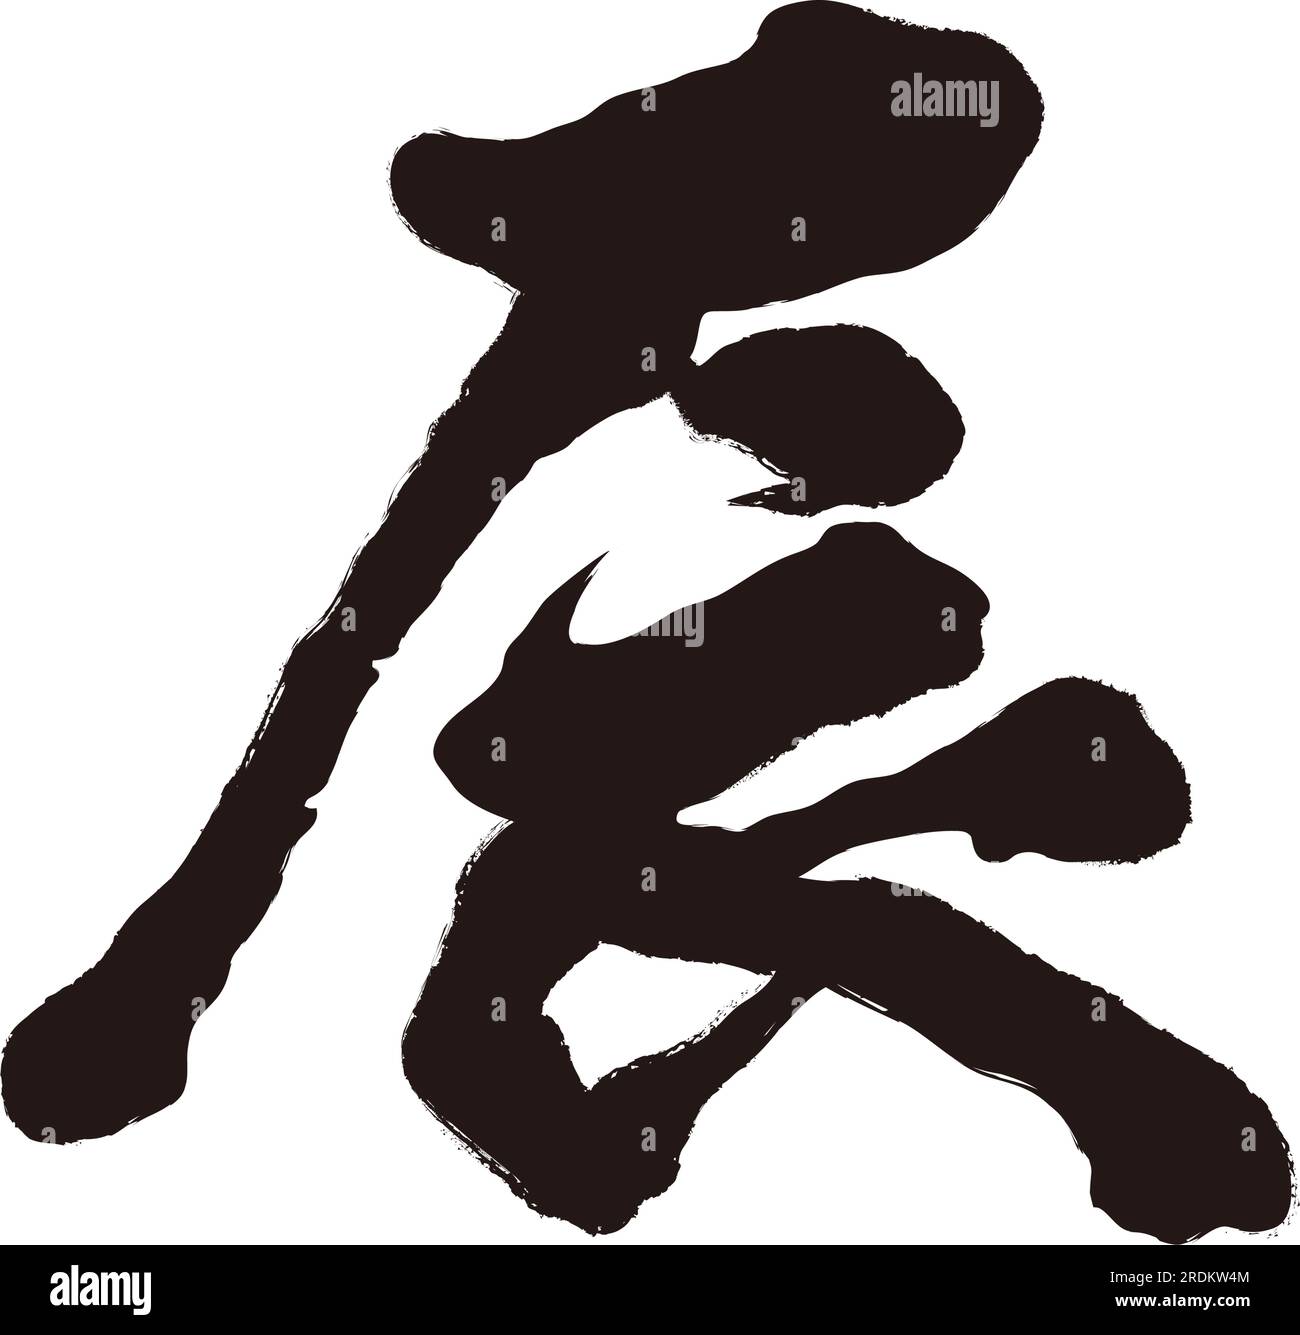 Das Jahr des Drachen Vektor Kanji-Pinsel Kalligrafie Logo isoliert auf weißem Hintergrund. Kanji Text Translation - Der Drache. Stock Vektor